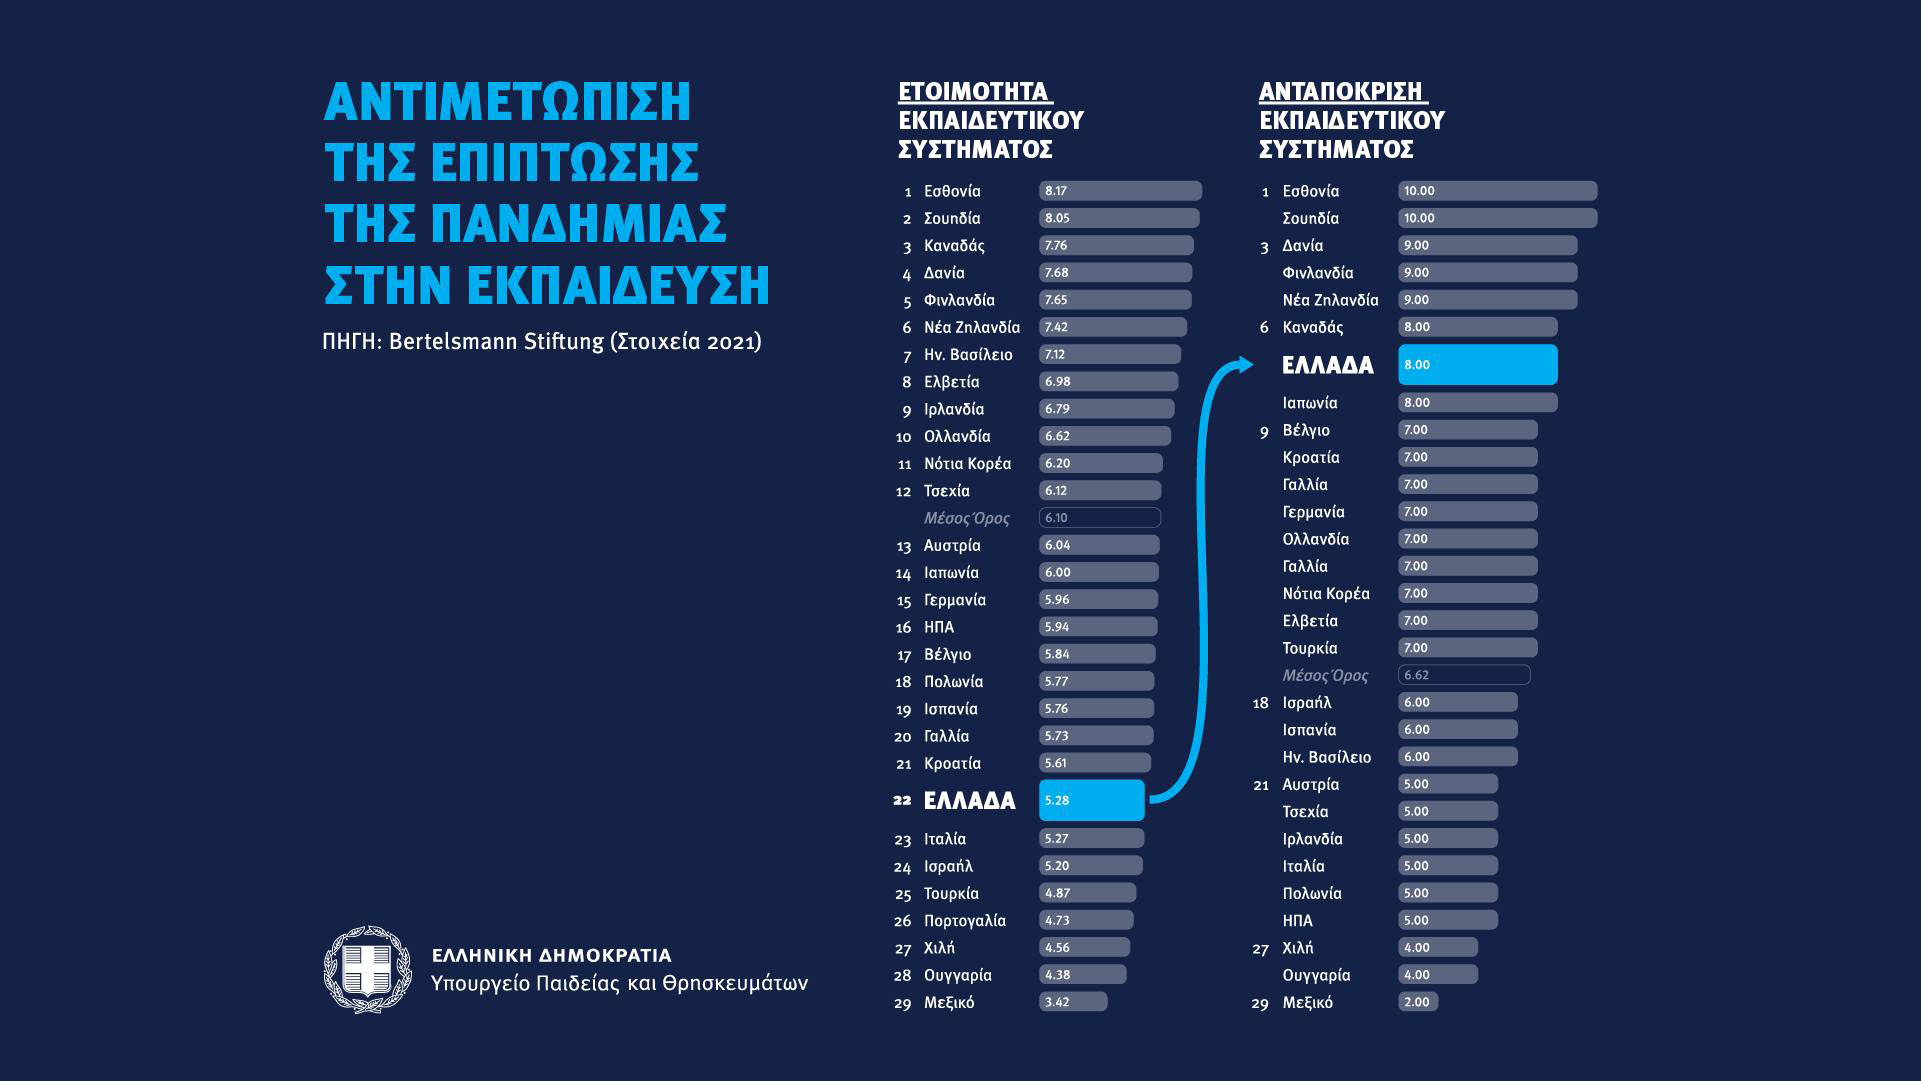 Κεραμέως: 18 θέσεις ανέβηκε η Ελλάδα, στην αντιμετώπιση της πανδημίας από το εκπαιδευτικό σύστημα